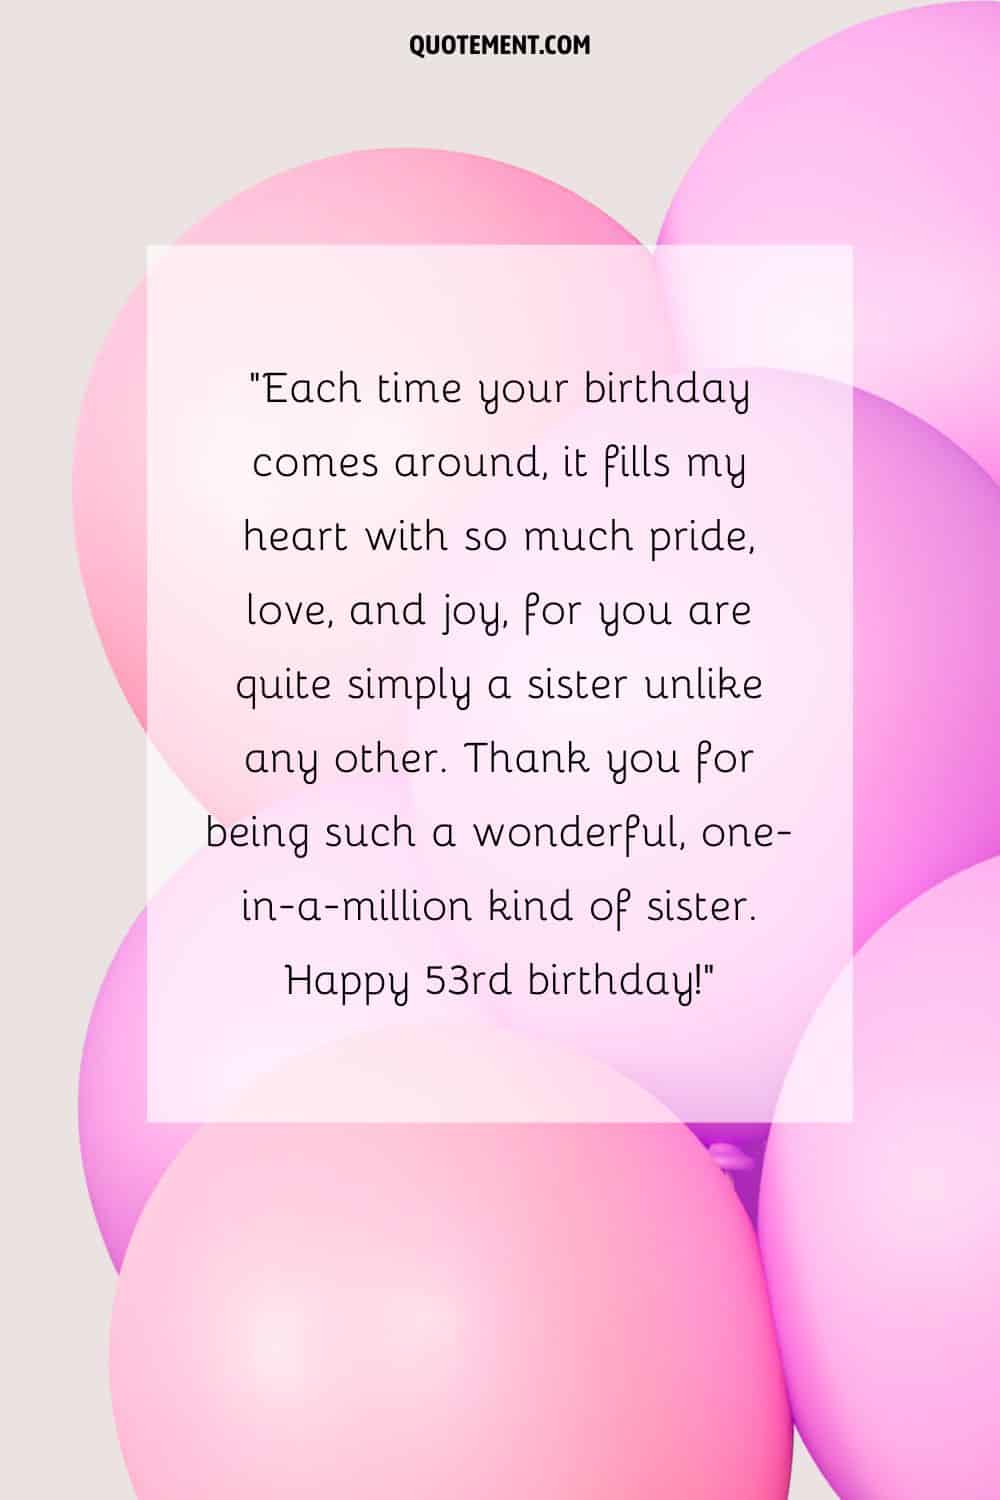 Conmovedor mensaje por el 53 cumpleaños de una hermana y globos rosas y morados de fondo